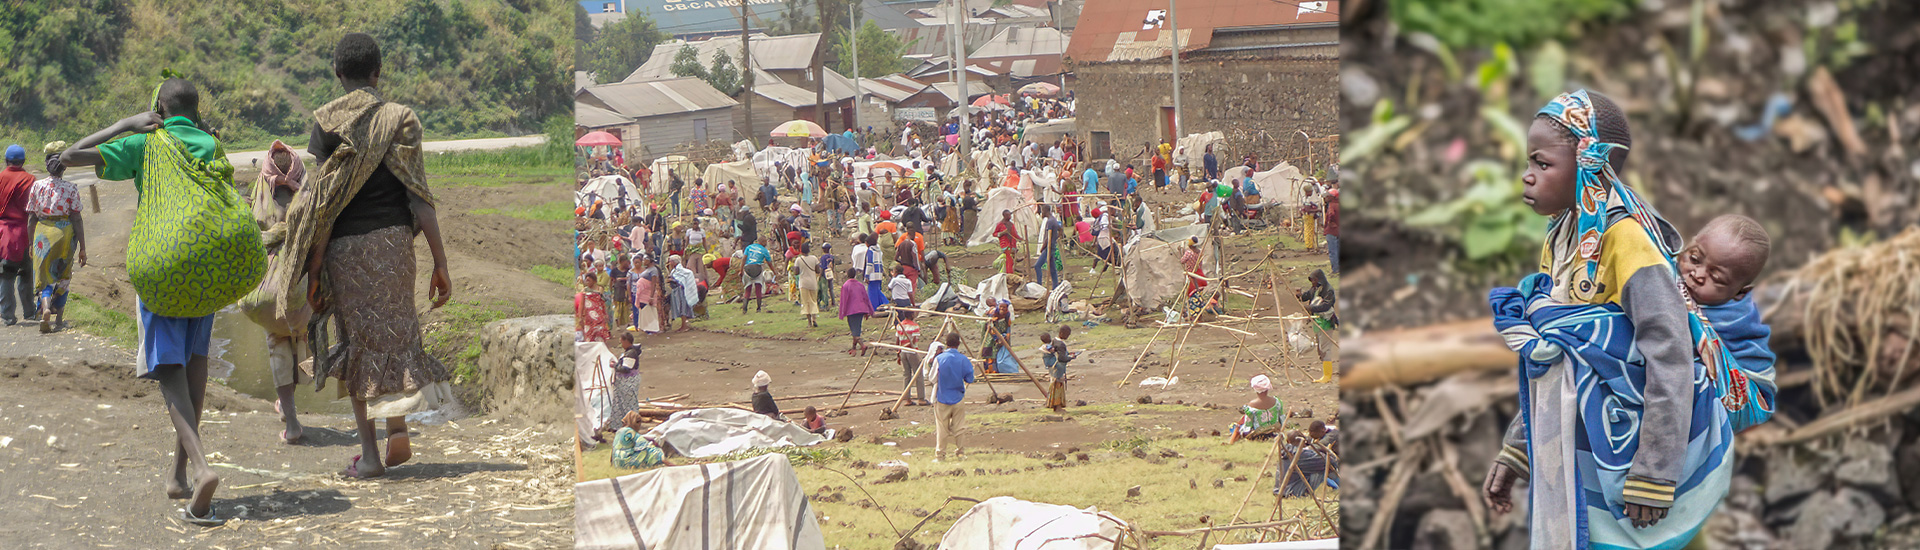 Miles de personas se refugian en el centro salesiano Don Bosco Ngangi tras intensificarse los combates en el Norte de RD Congo